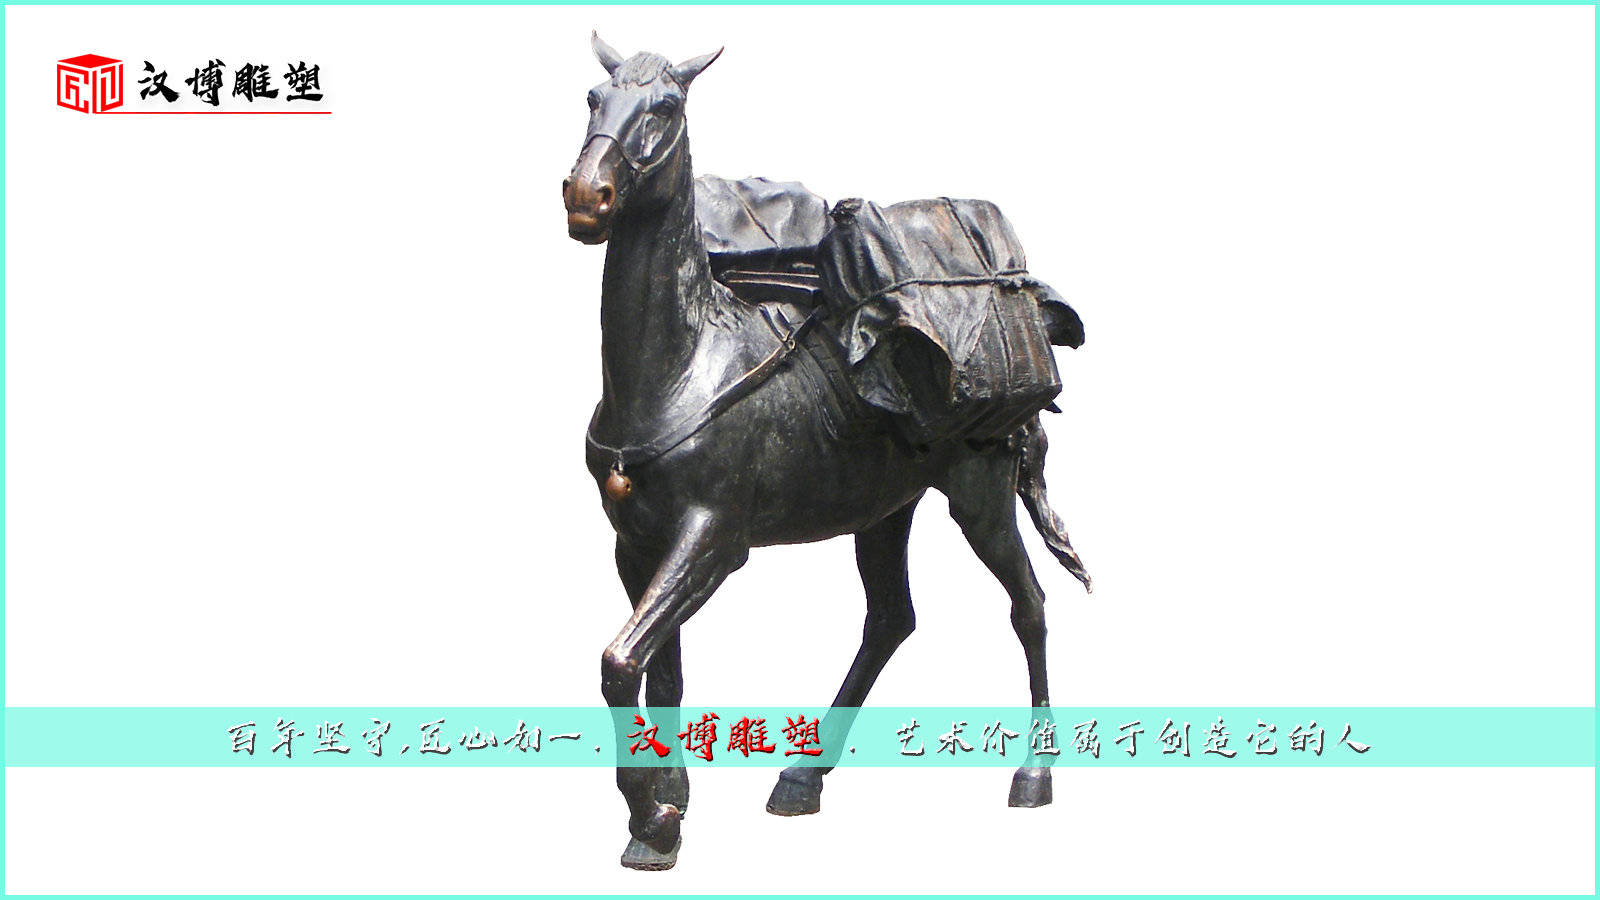 茶马古道主题雕塑——千秋万代闪烁着的荣耀与光辉